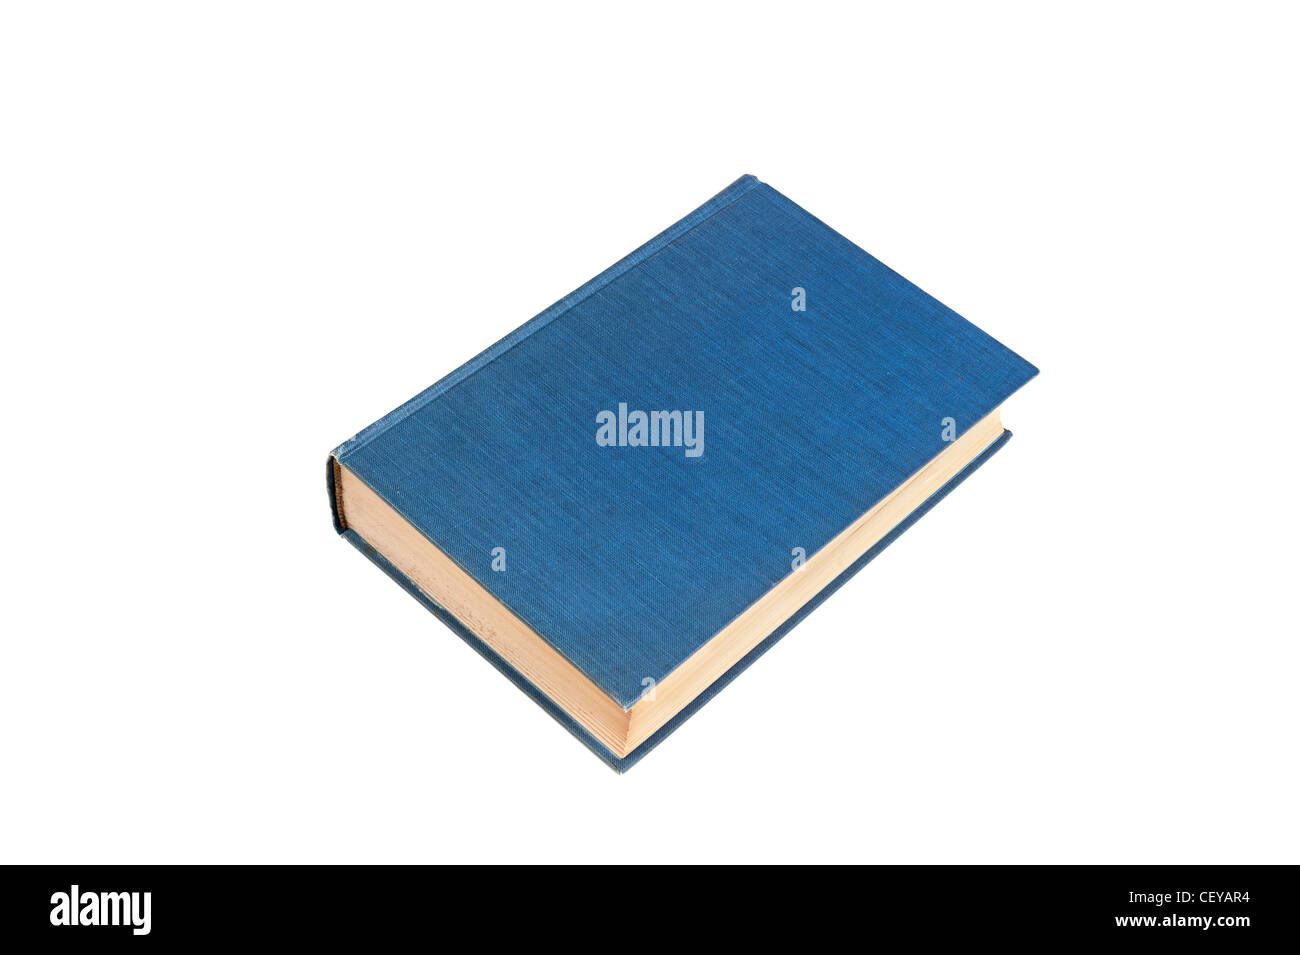 Un viejo, anciano azul libro empastado aislado en blanco. Los diseñadores pueden colocar copiar en la portada en blanco. Foto de stock